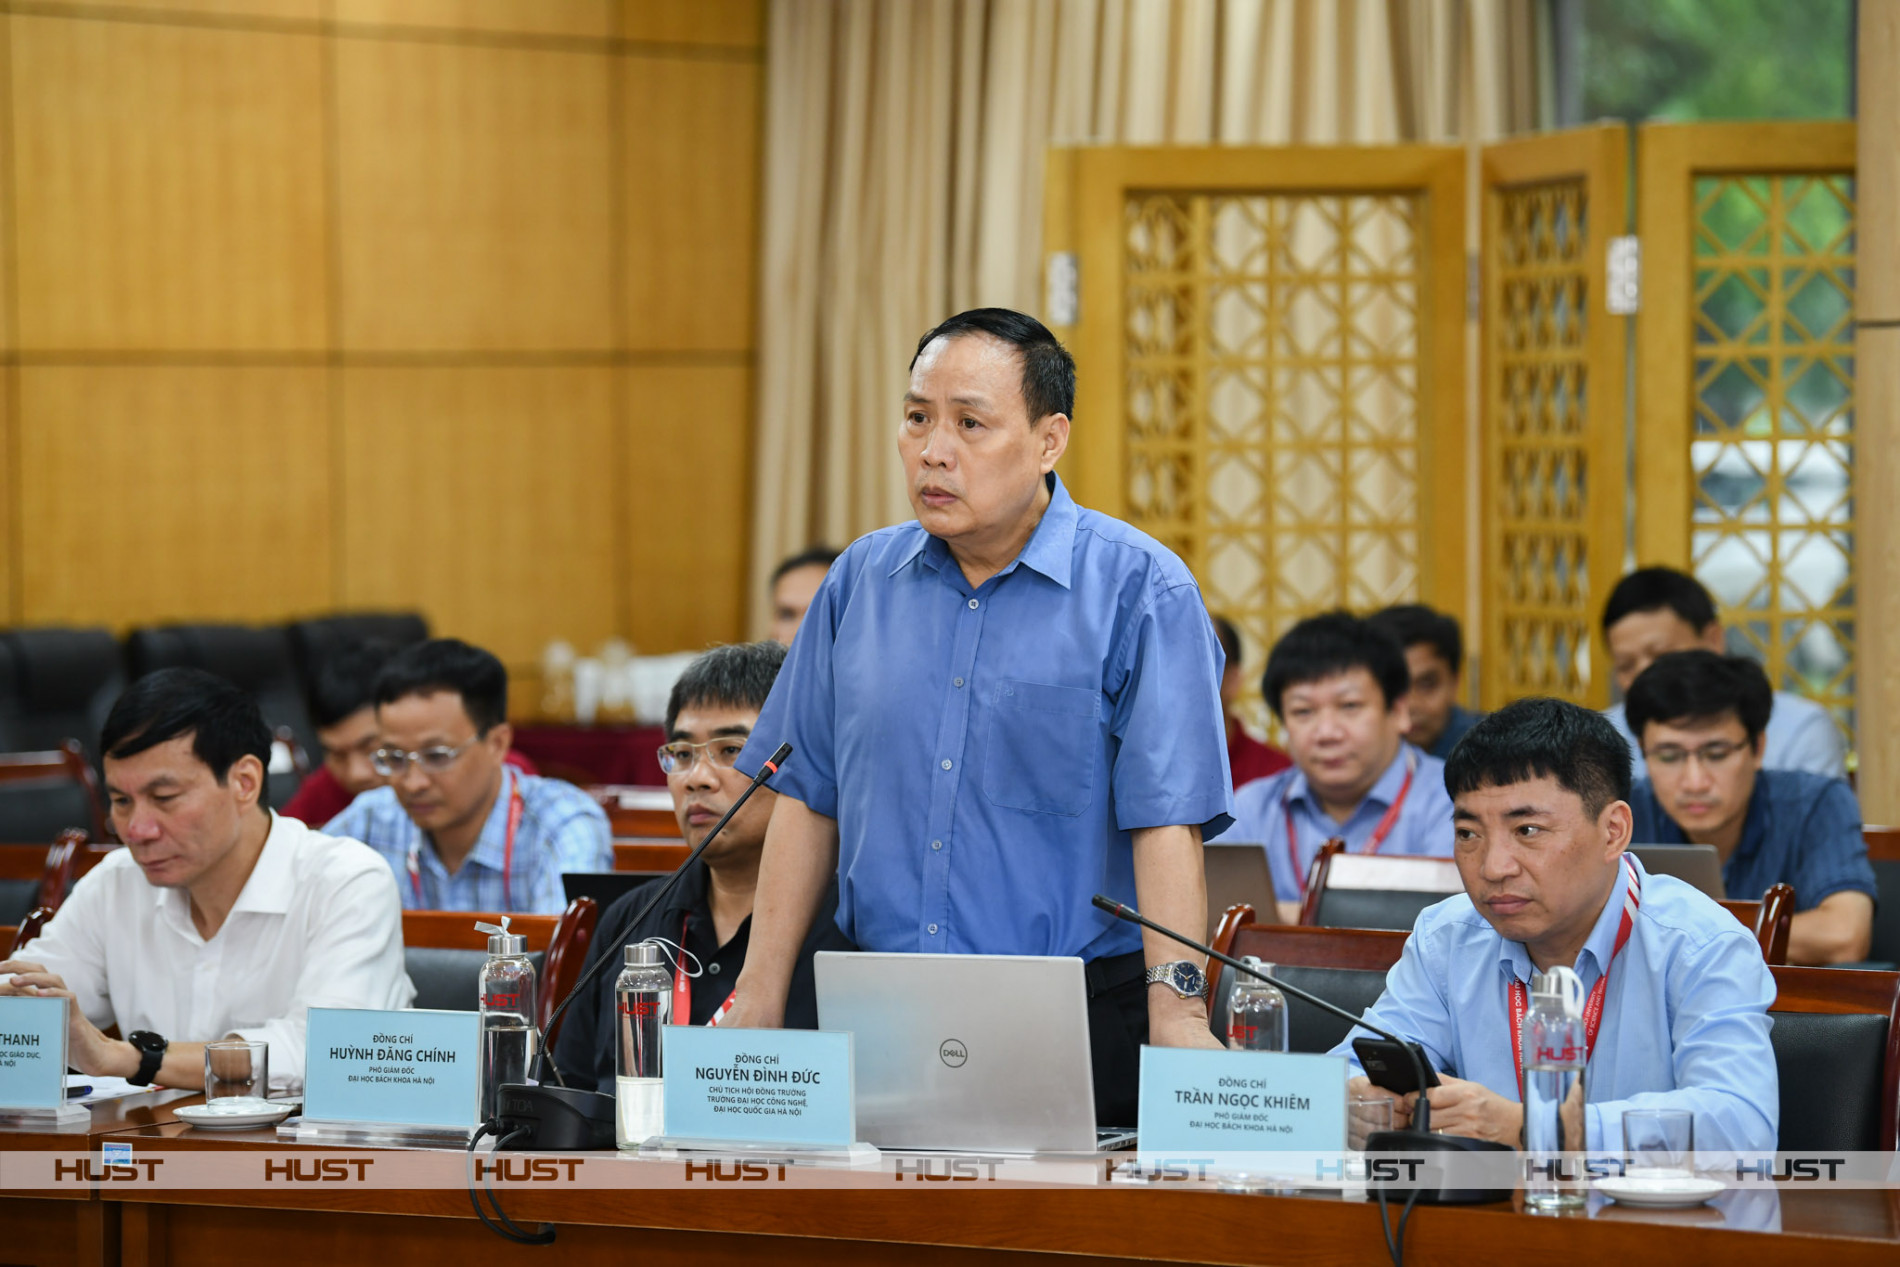 GS. TSKH Nguyễn Đình Đức, Chủ tịch HĐT, Trường ĐH Công nghệ, ĐHQG Hà Nội - phát biểu tại Tọa đàm